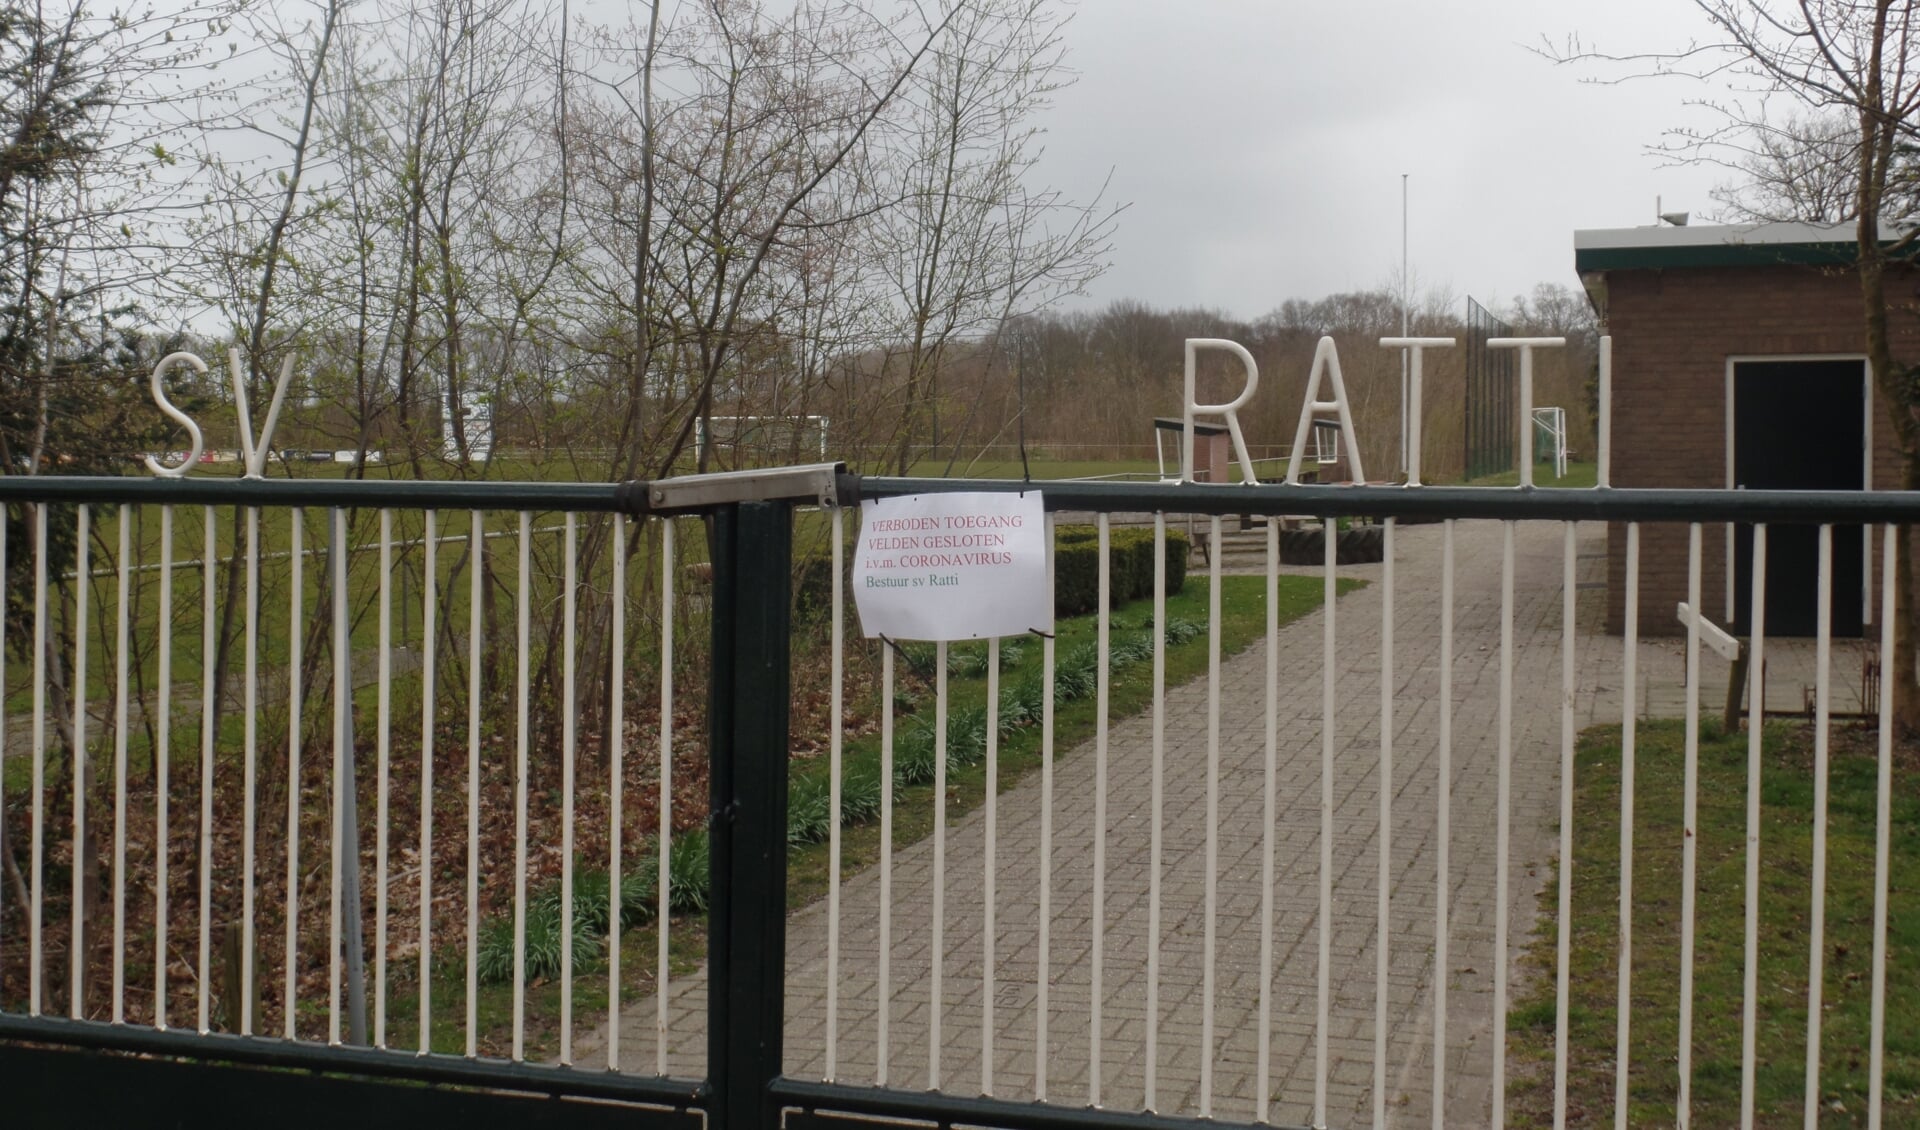 Het sportcomplex van SV Ratti aan de Eikenlaan in Kranenburg is gesloten in verband met het coronavirus zo is te lezen op het toegangshek. Foto: Jan Hendriksen